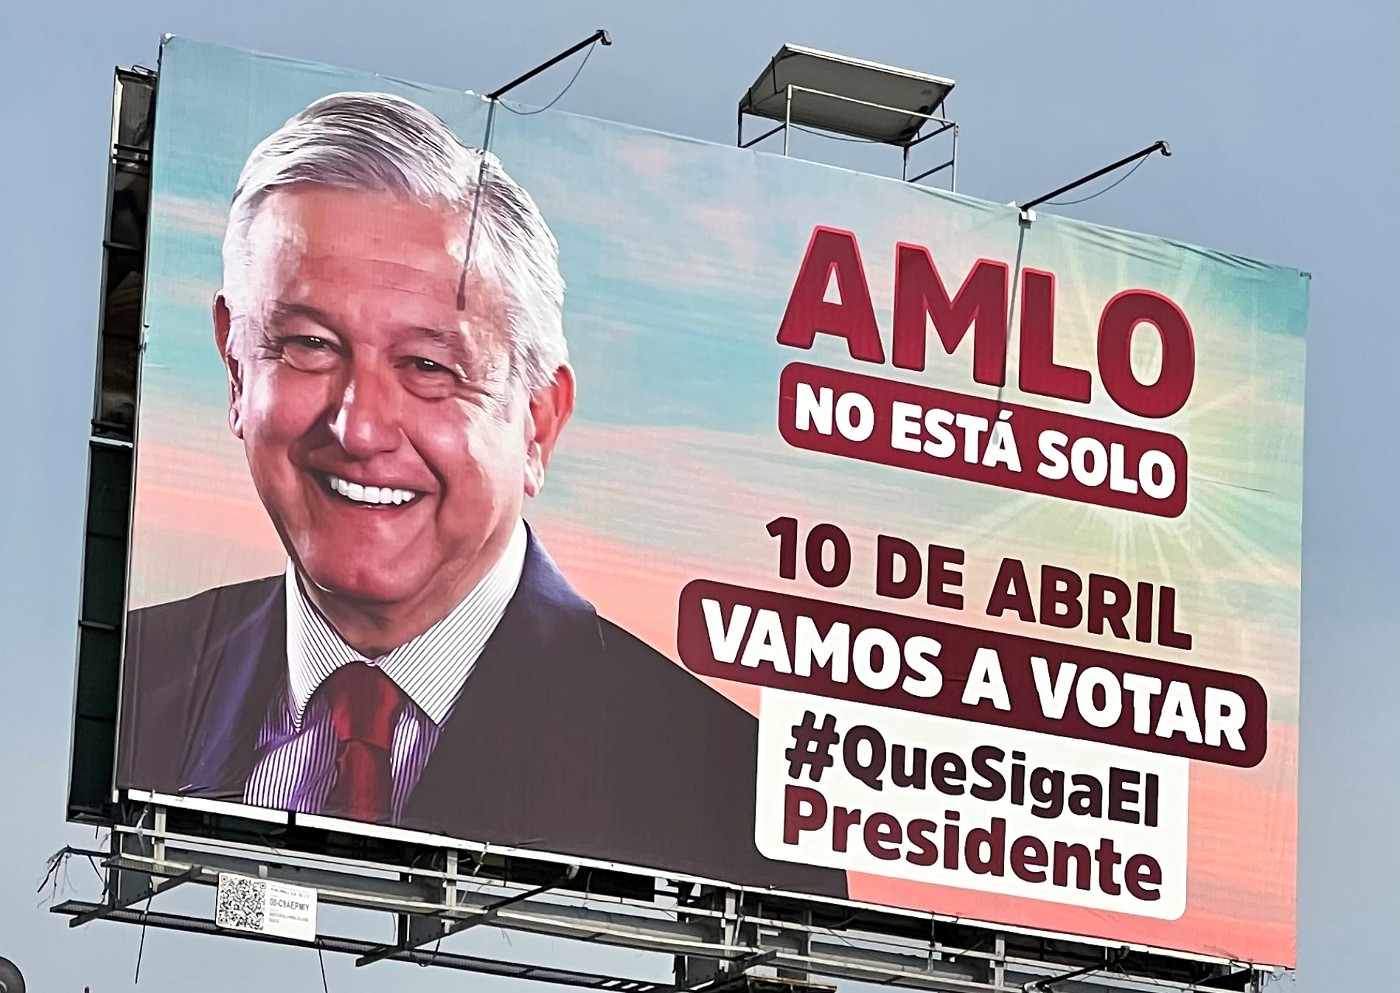 "AMLO ist nicht allein. Wählen wir, damit der Präsident bleibt!" steht auf dem Wahlplakat. Foto: Klaus Ehringfeld